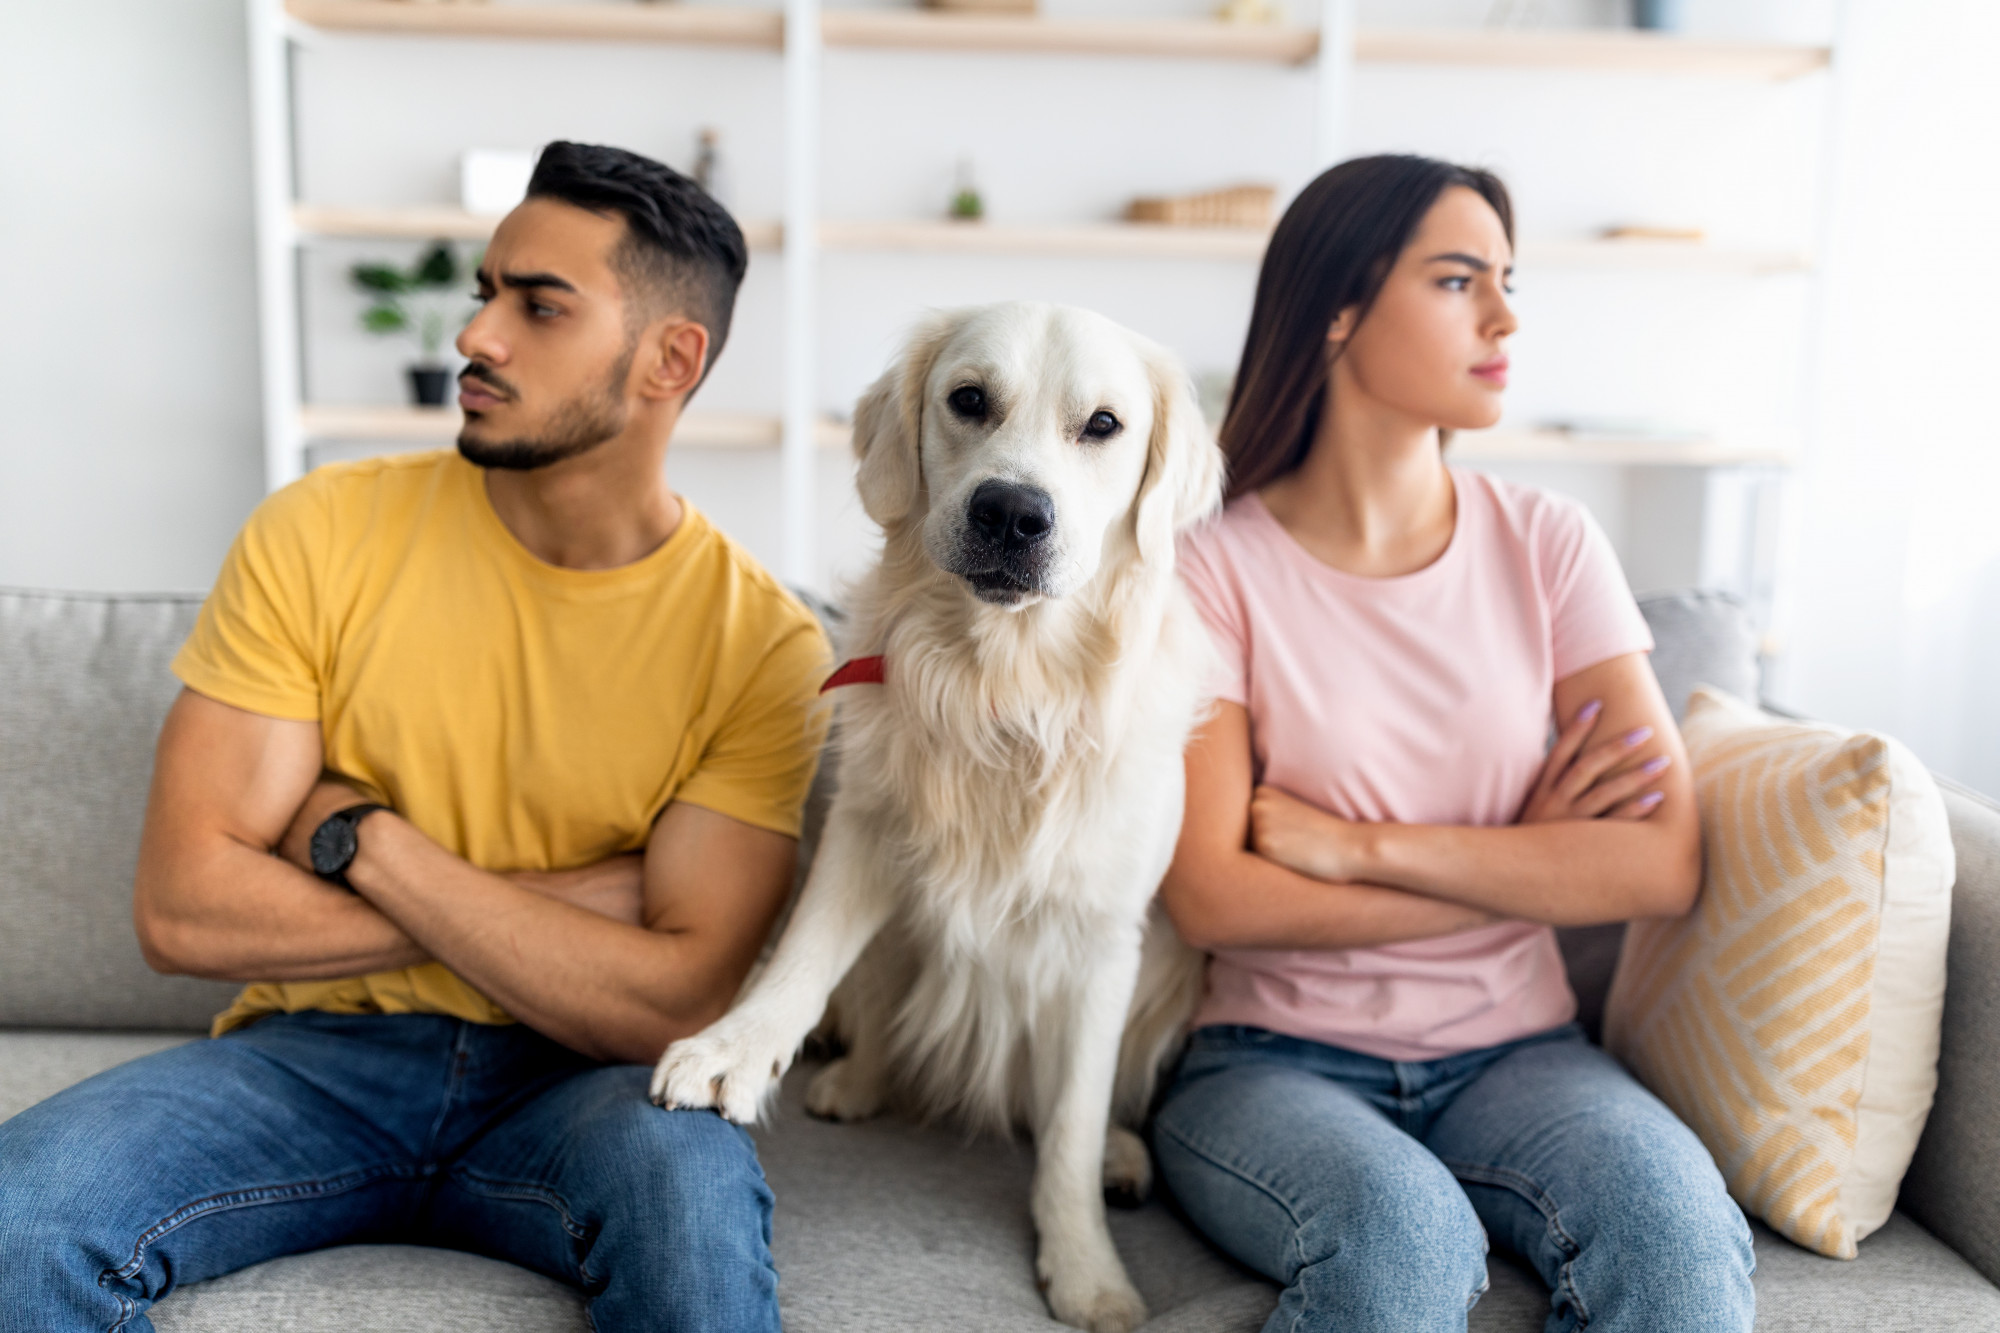 Nhiều gia đình ở nước Anh đang lo lắng sẽ bị mất quyền nuôi, chăm sóc thú cưng khi họ ly dị - Anh;  123rf.com